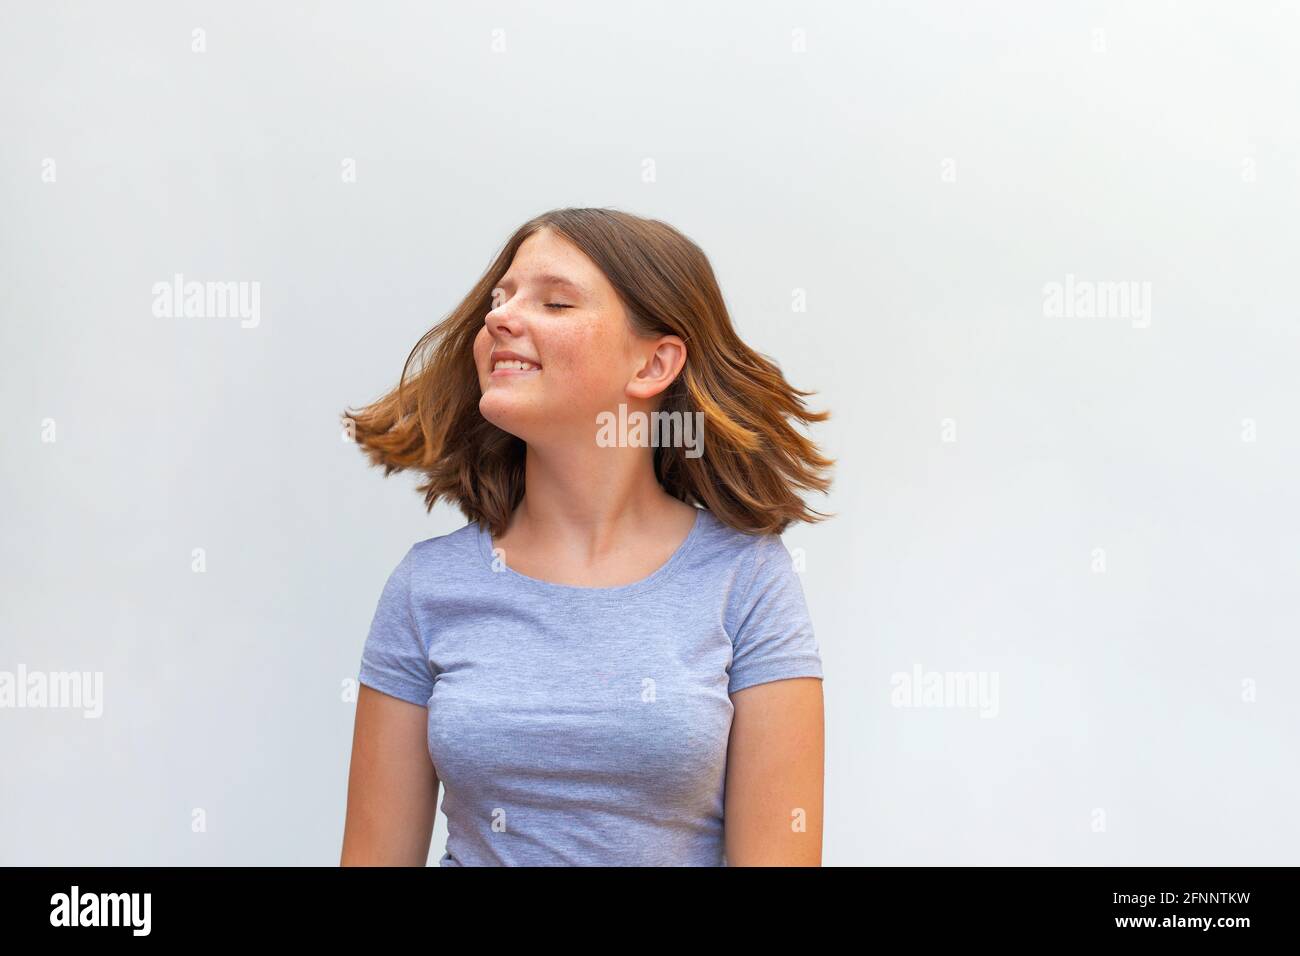 Portrait von schönen kaukasischen Teenager-Mädchen mit fliegenden Haaren lächelnd Lachen Entspannen Sie sich auf weißem Hintergrund Stockfoto